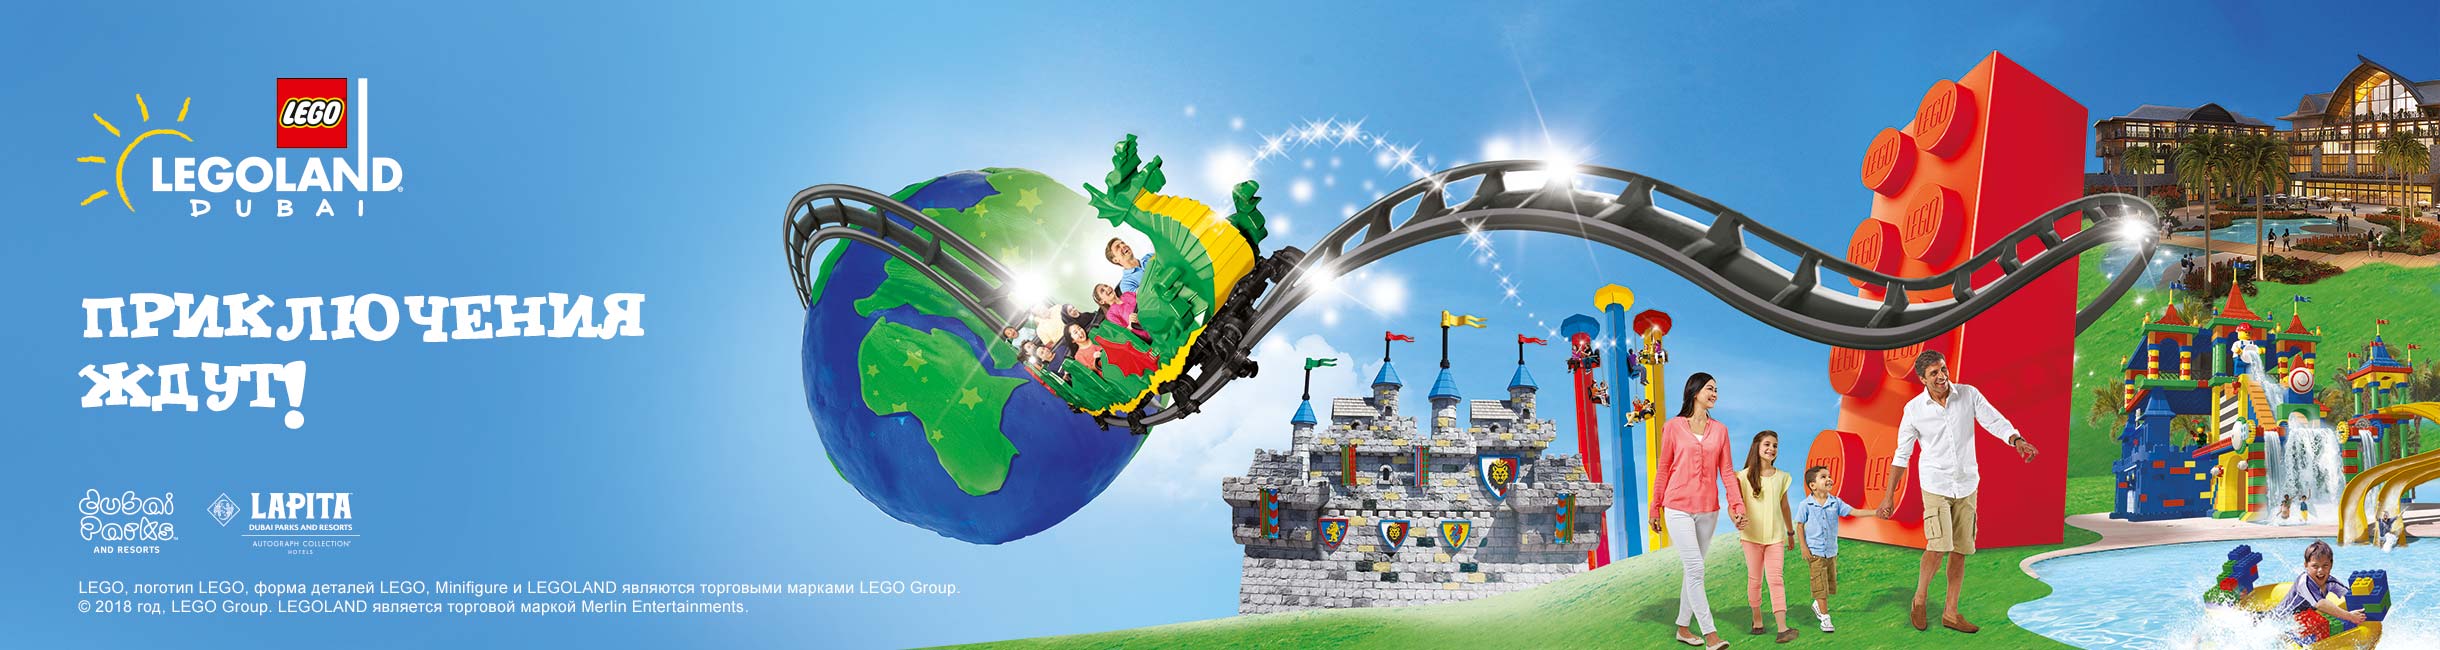 Рекламная акция Лего (LEGO) «Приключения ждут!»